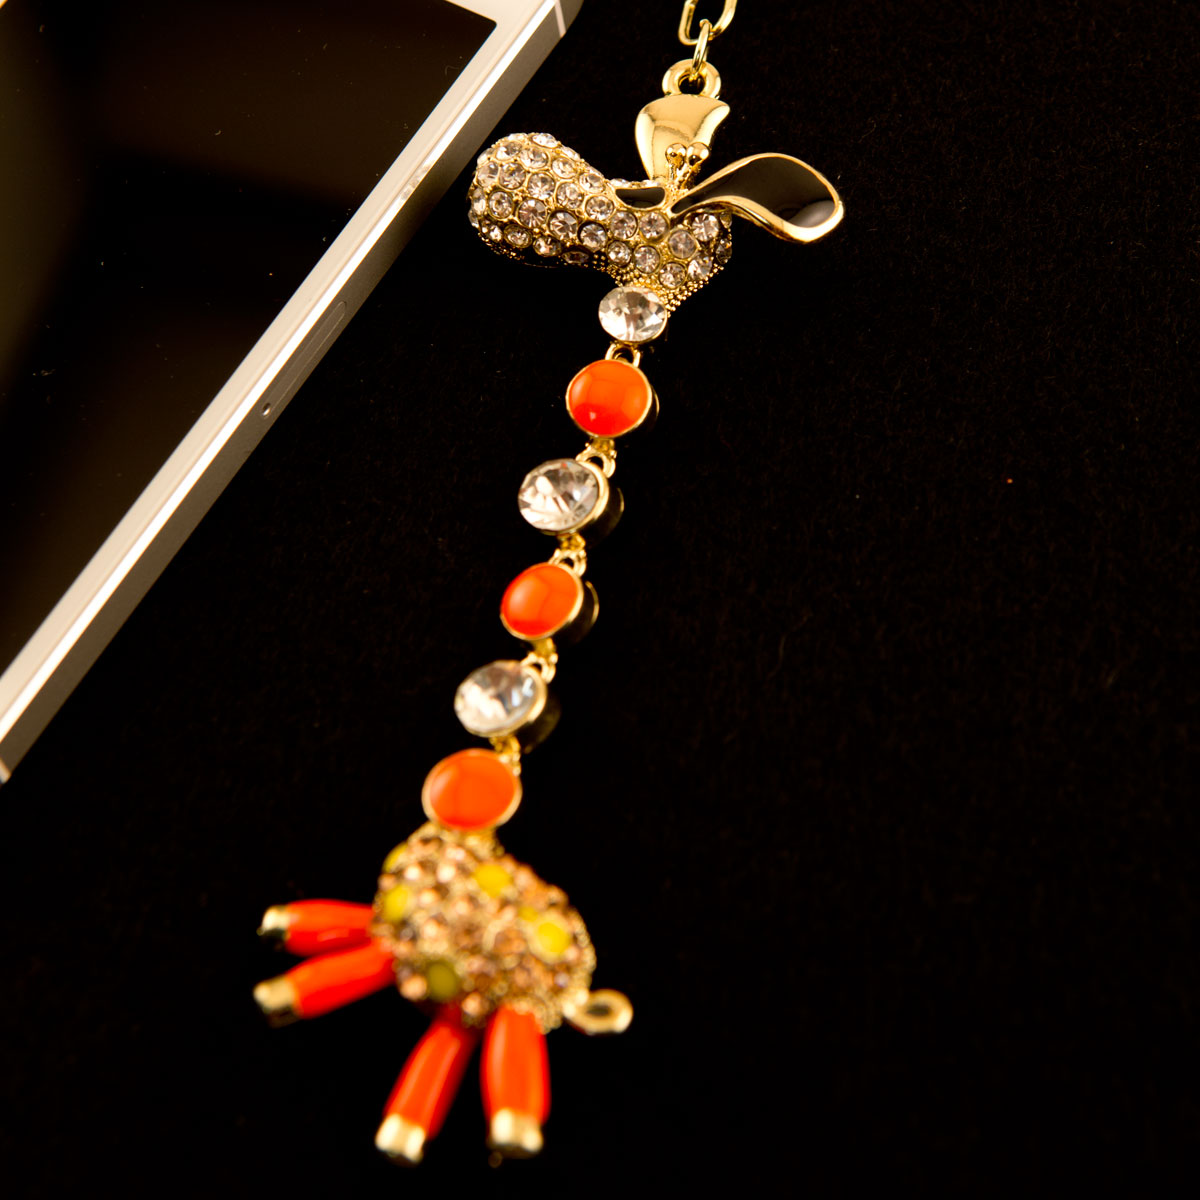 Giraffe Rhinestone Swarovski Crystal Pedant Purse Key Chain Valentine's Day Gift